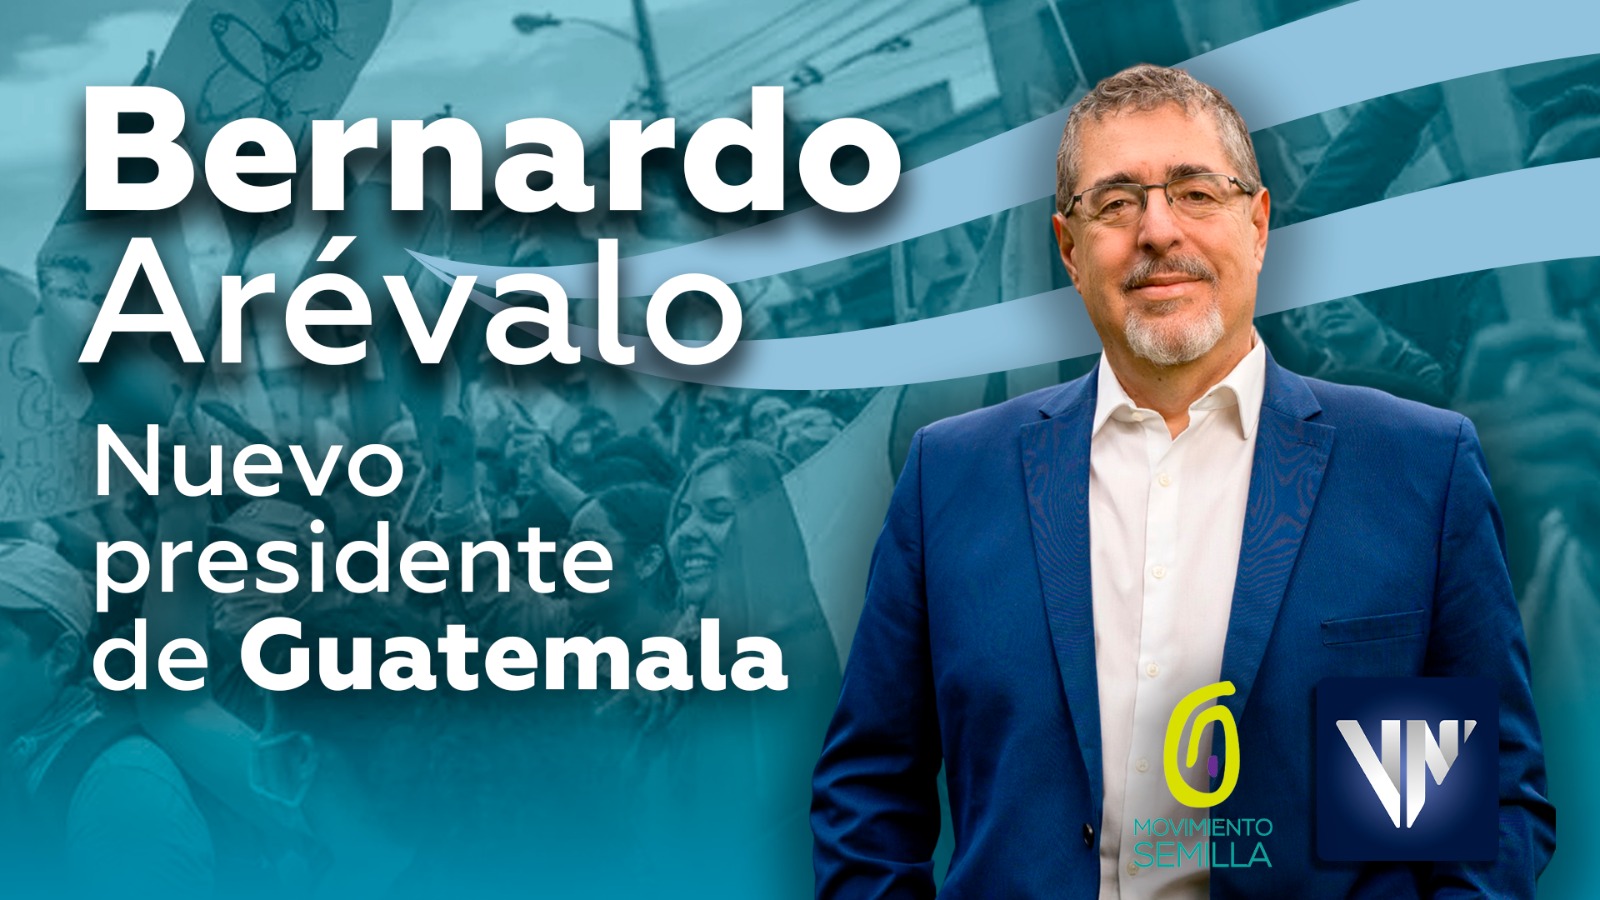 Bernardo Arévalo es el nuevo presidente de Guatemala con 59 de votos